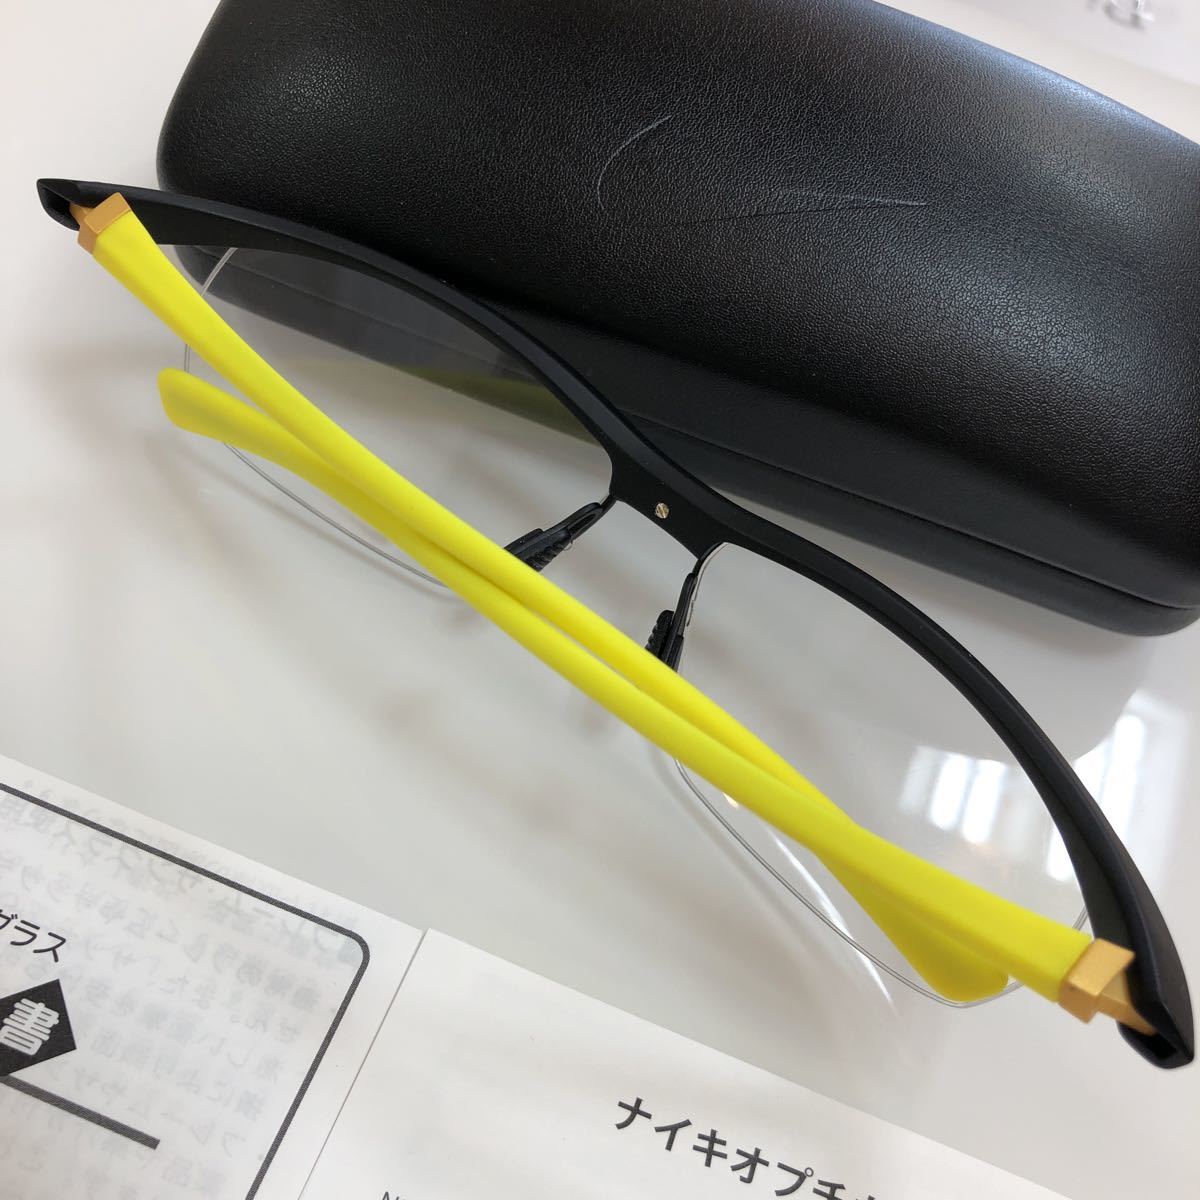  обычная цена 22,000 иен стандартный товар 7070/3 7070 NK7070 013 NIKE VISION VORTEX Nike Voltec s оправа для очков оправа для очков стандартный товар очки 